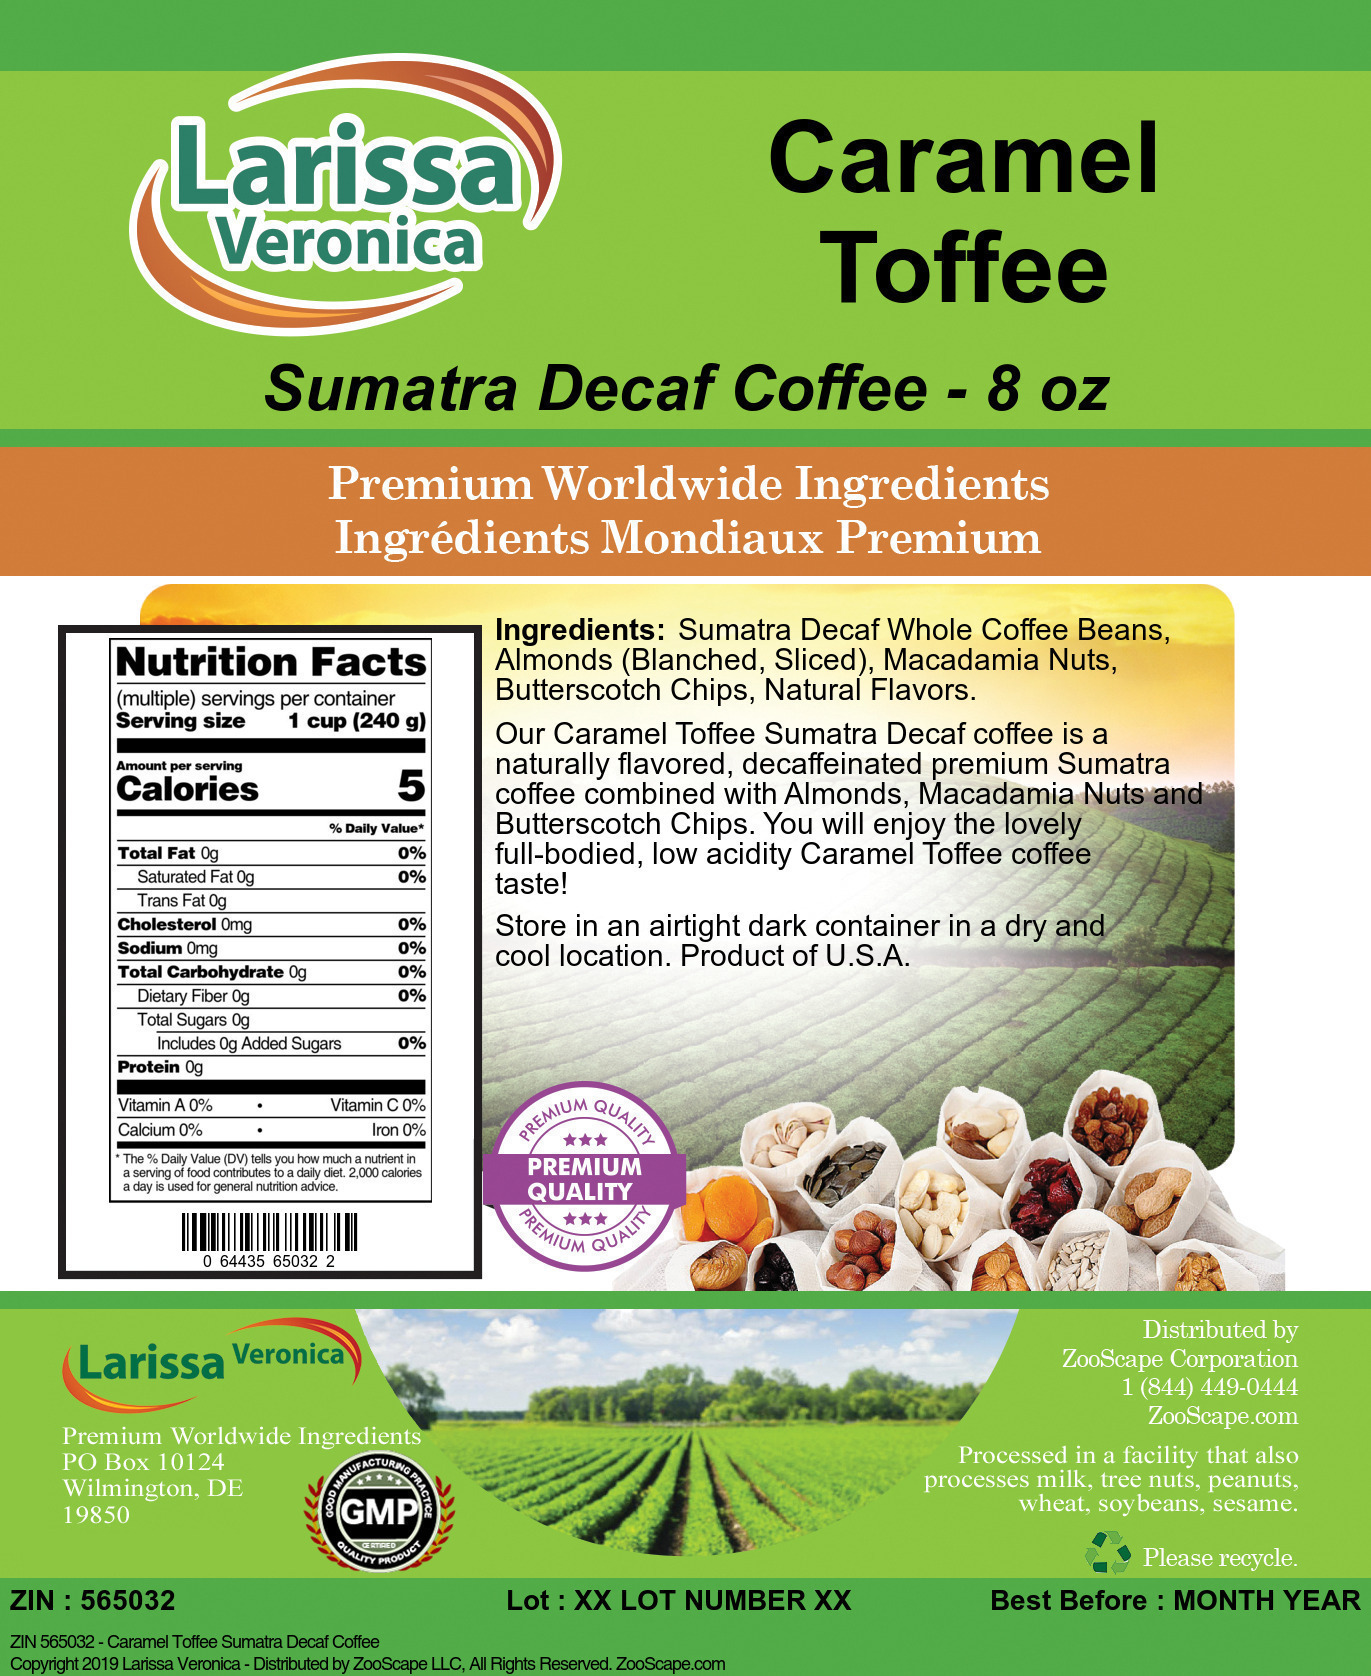 Caramel Toffee Sumatra Decaf Coffee - Label